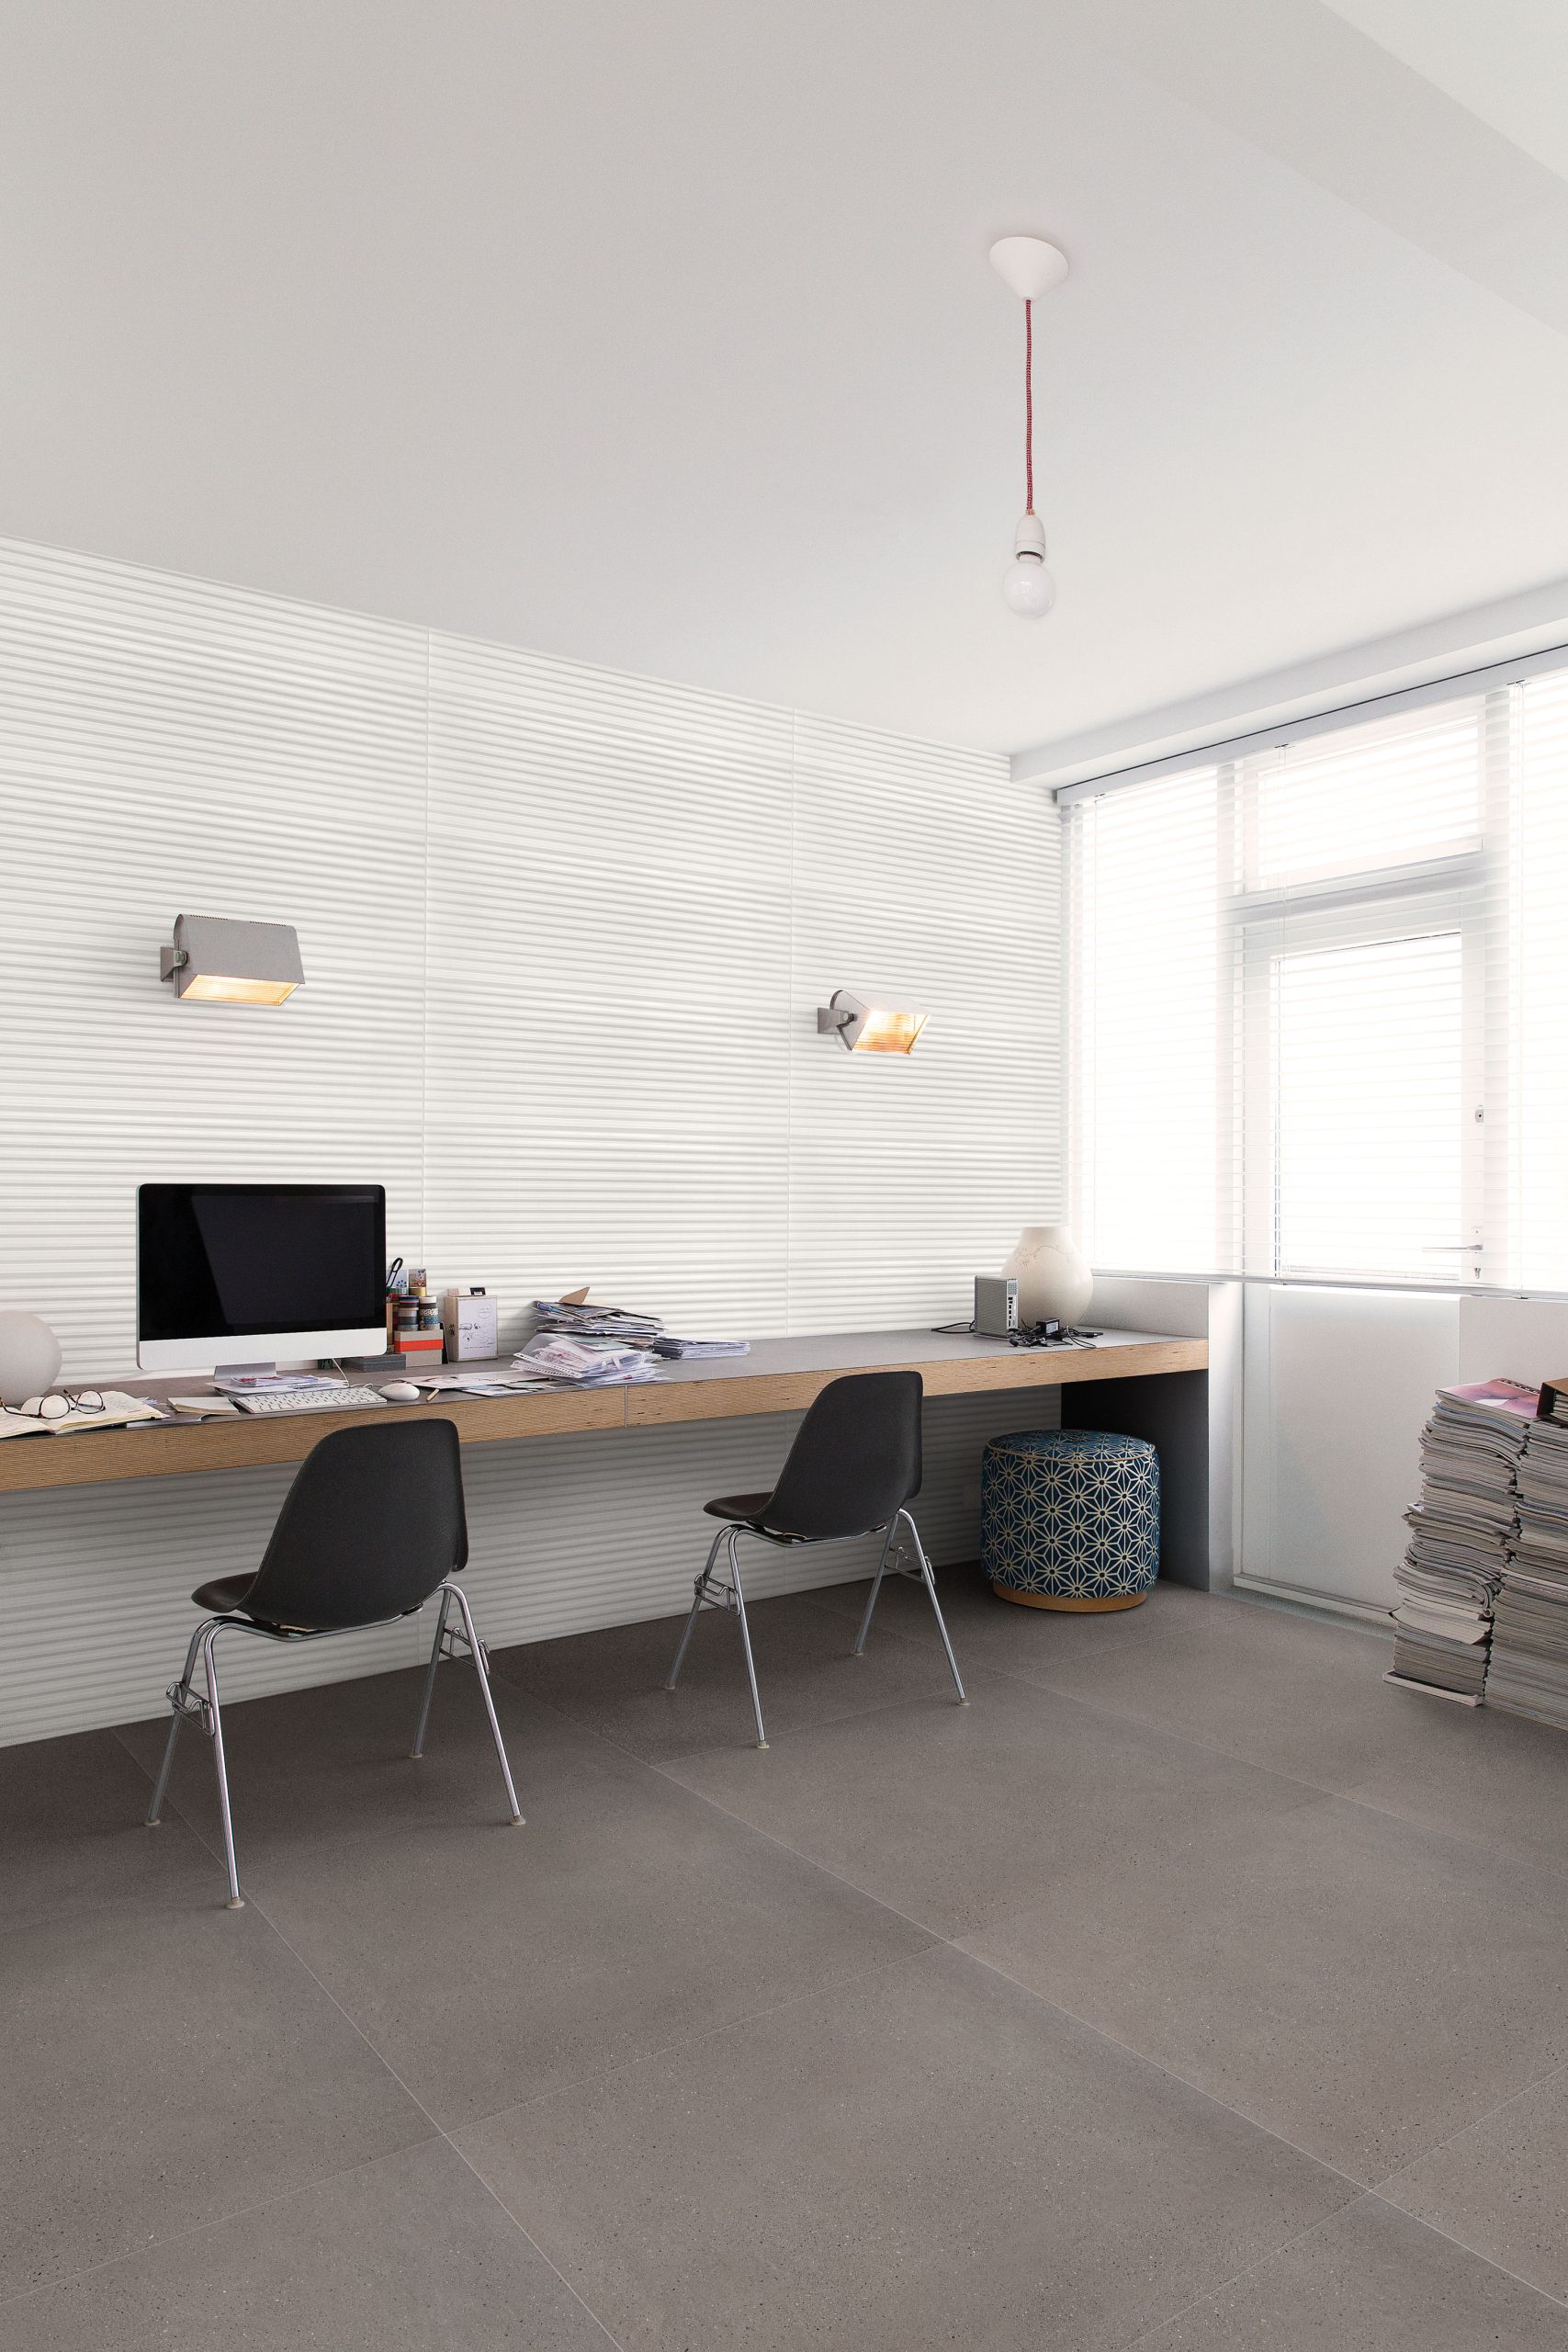 O revestimento monoporoso também pode aparecer em cômodos inusitados, como escritórios. No exemplo, White ZigZag, da linha Color Block